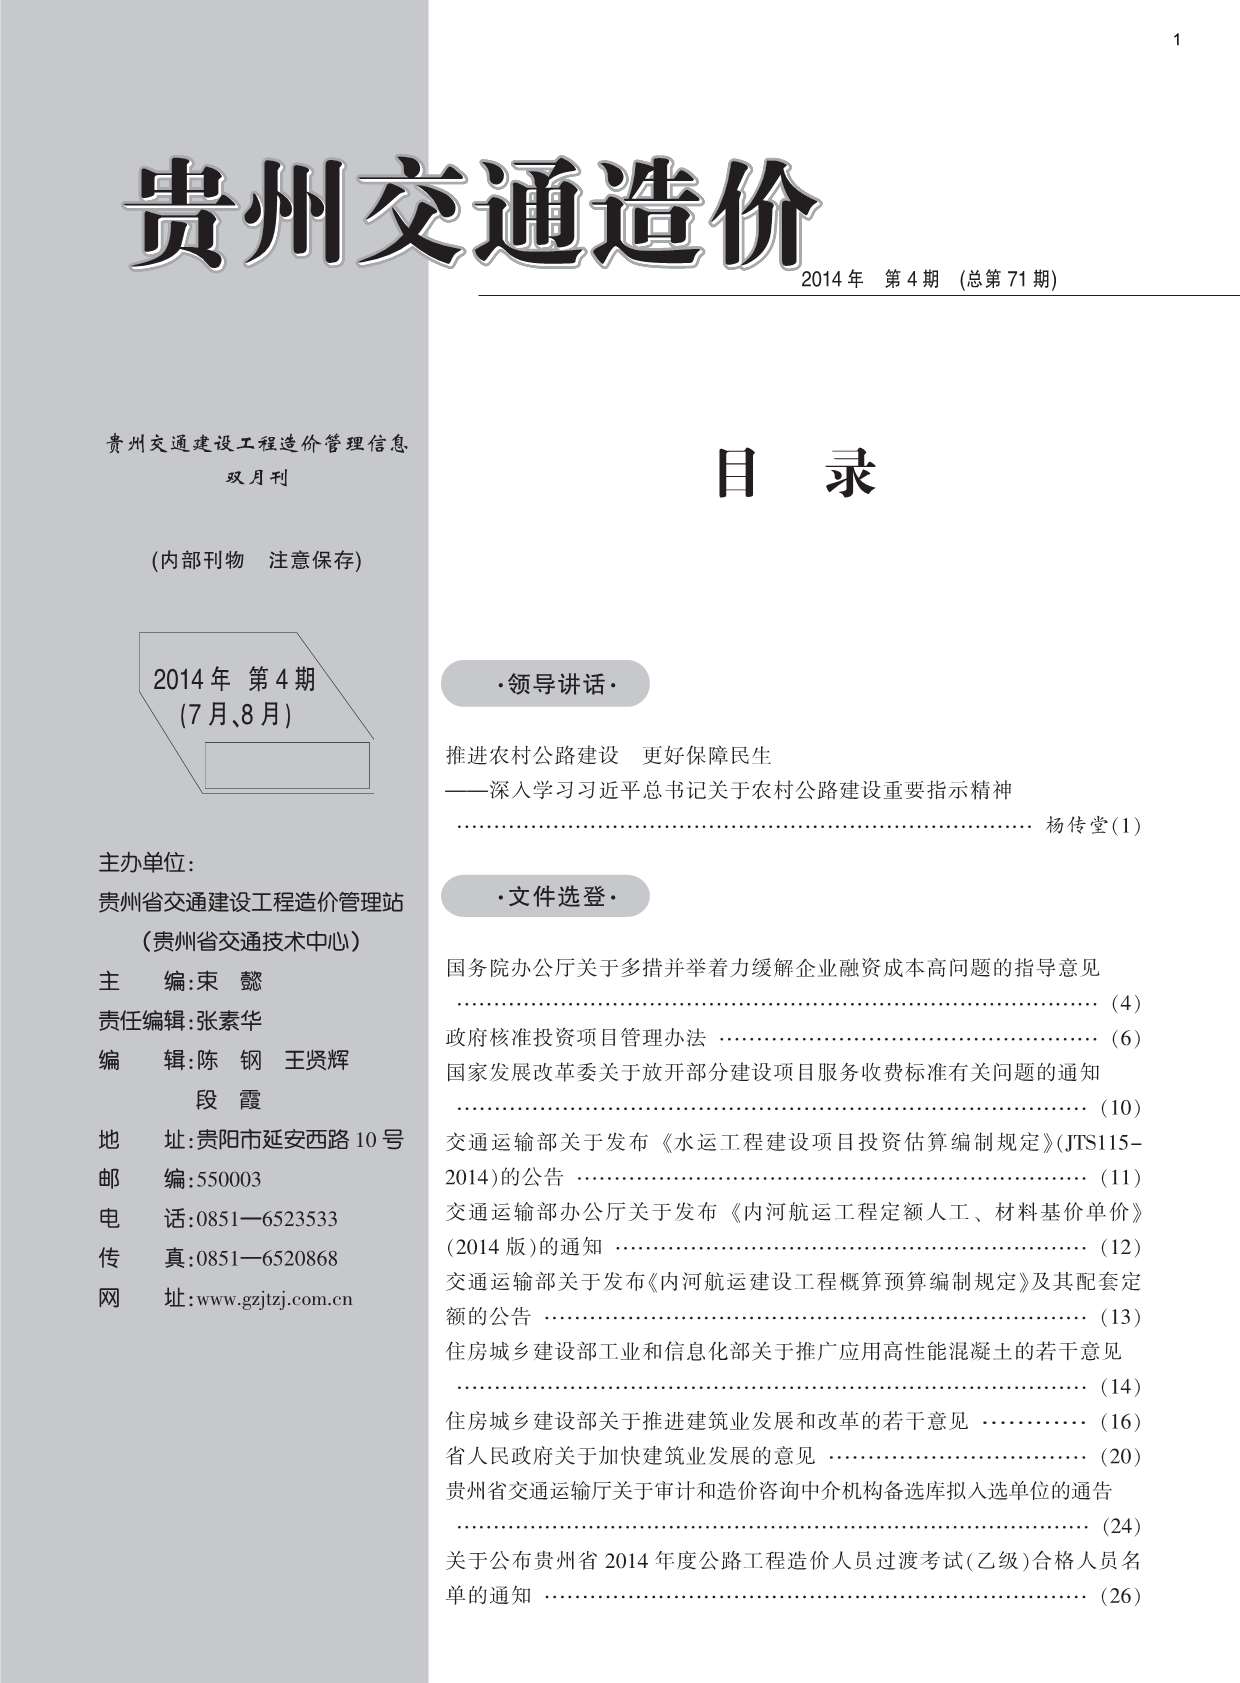 贵州省2014年4月交通建设工程造价管理信息造价库信息价